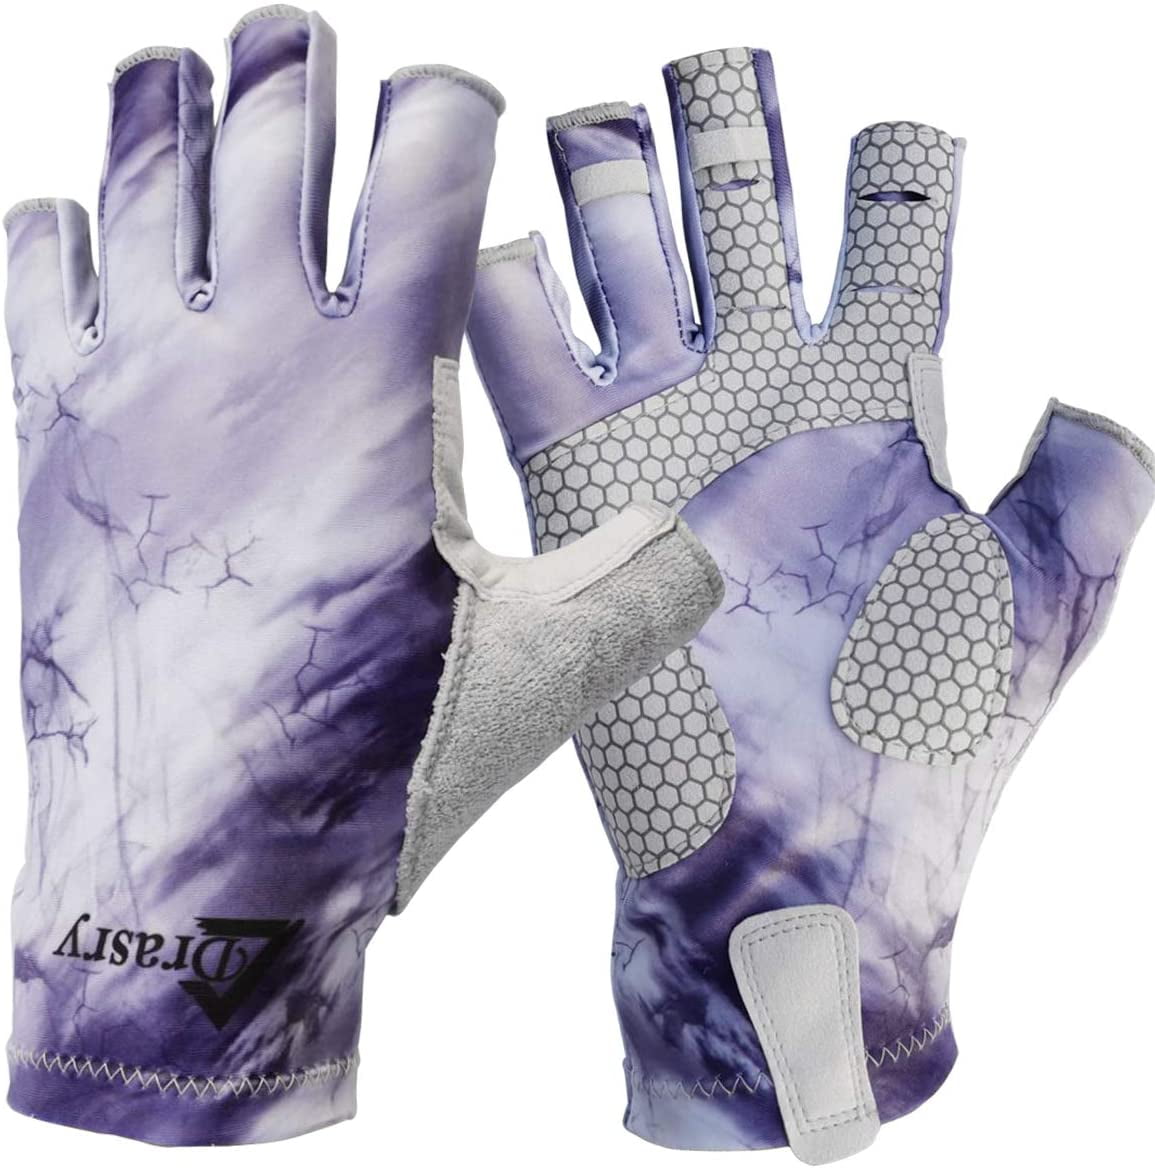 Buy Drasry UV Protection Fishing Fingerless Gloves Men Women UPF 50+ SPF  Gloves for Fishing, Kayak, Paddling, Hiking, Sailing, Rowing, Driving  Online at desertcartSeychelles